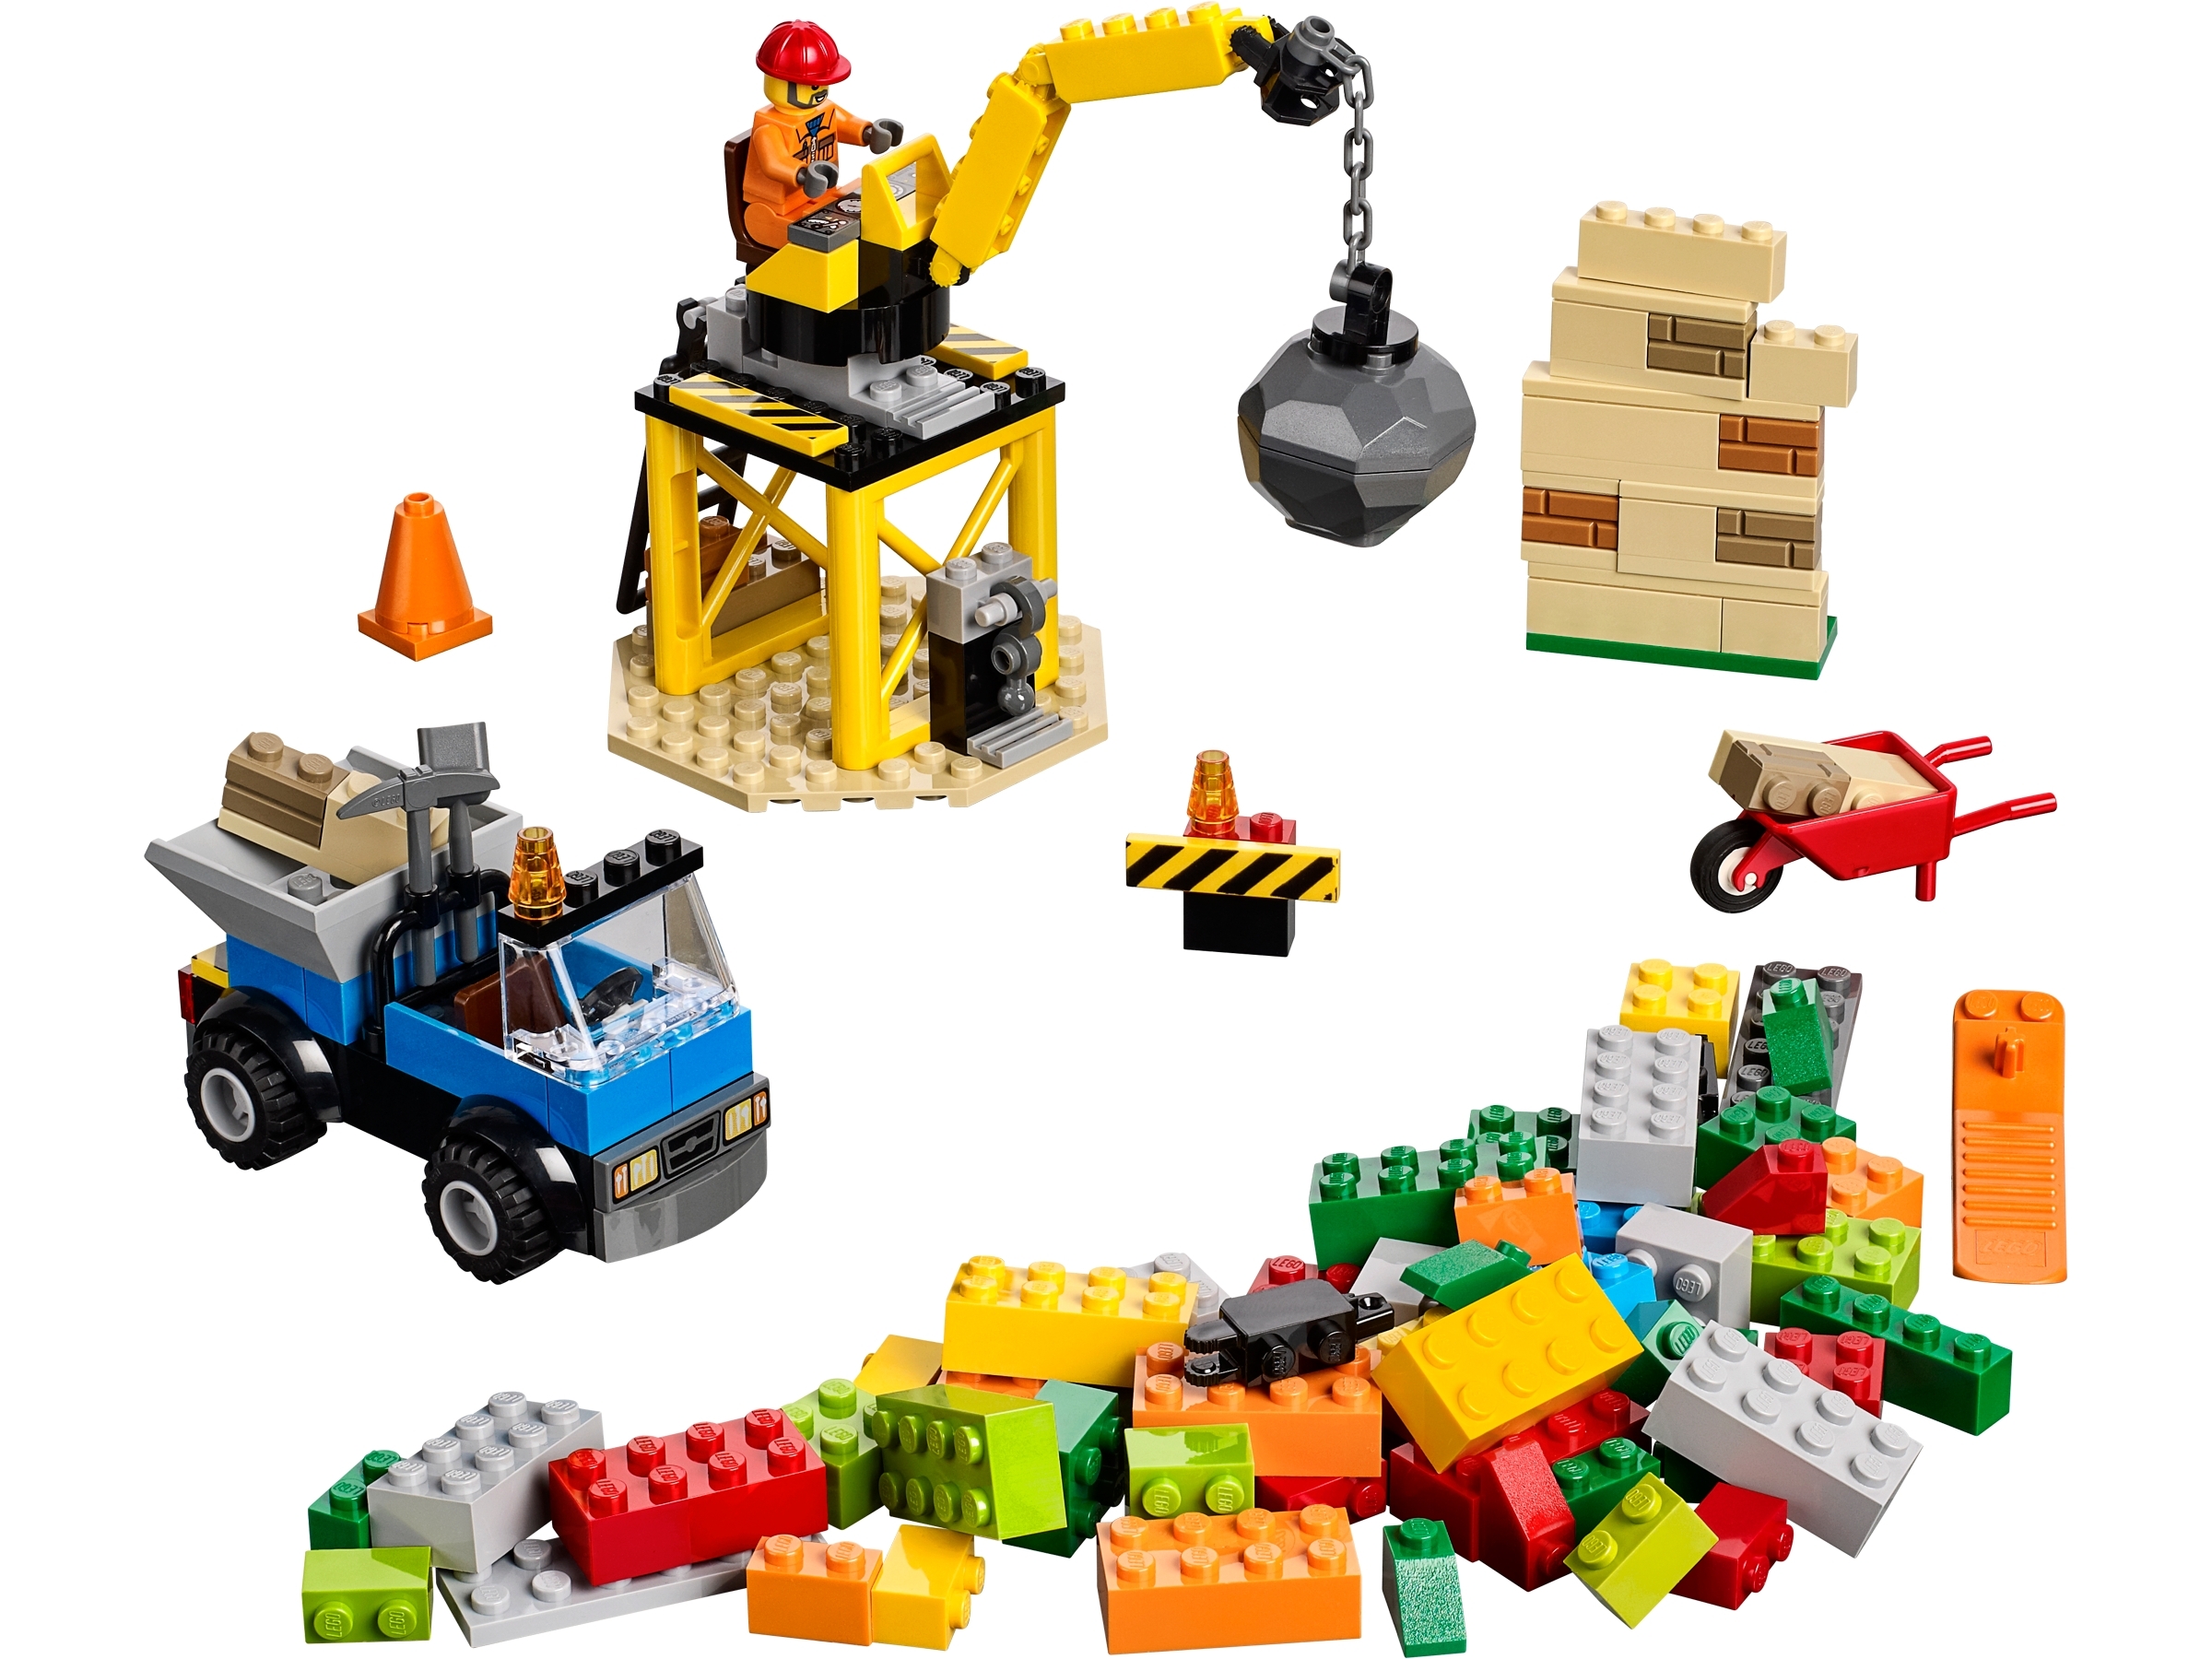 lego junior builders